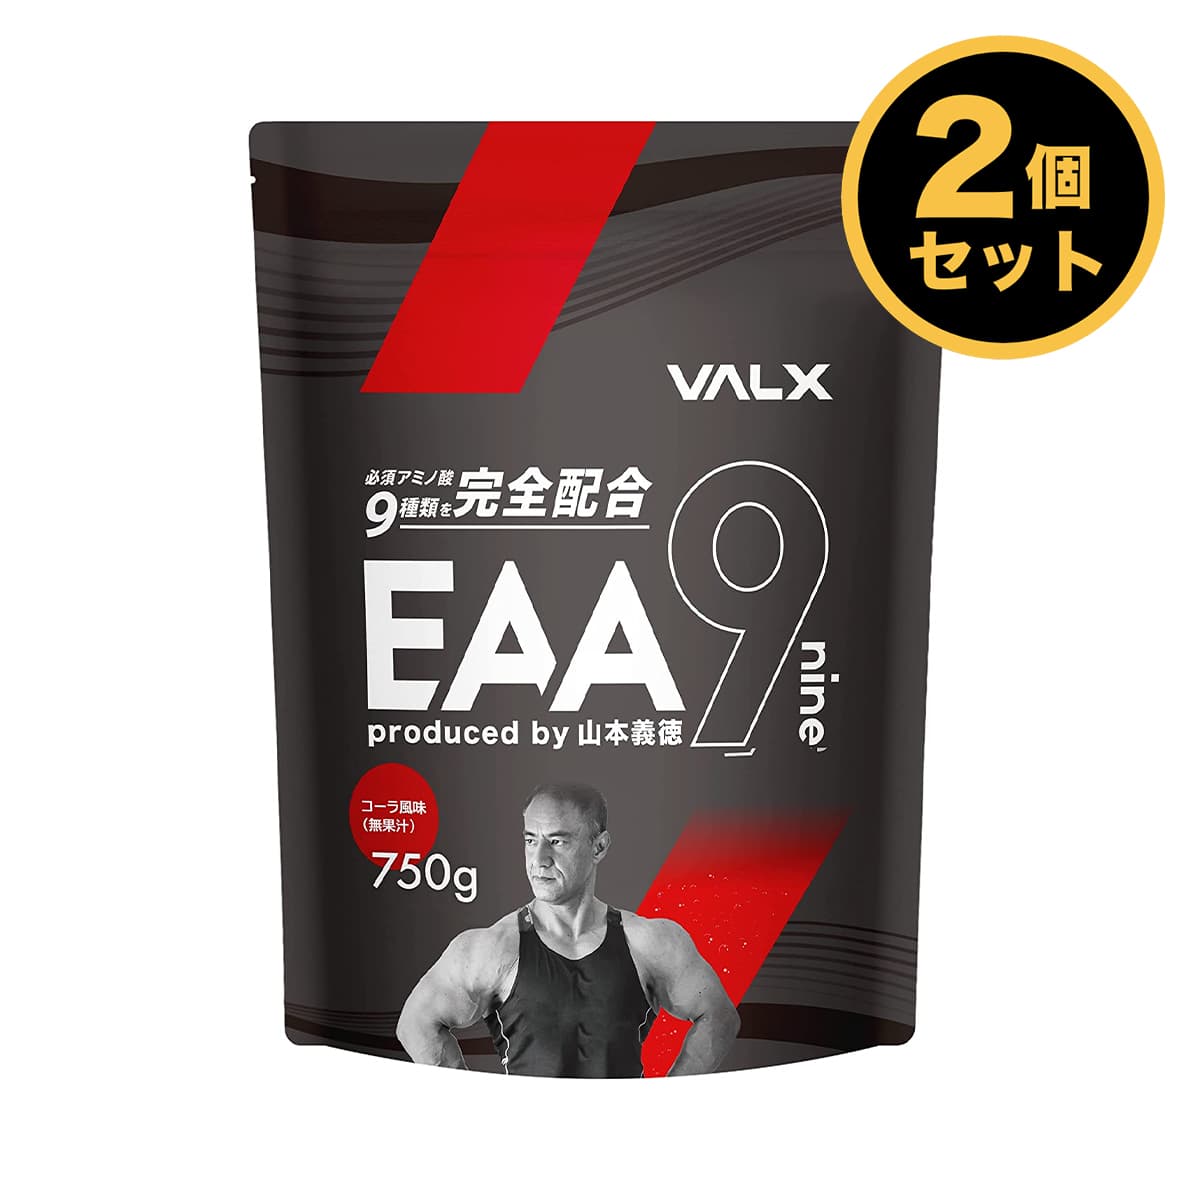 【楽天市場】VALX (バルクス) EAA9 Produced by 山本義徳 750g